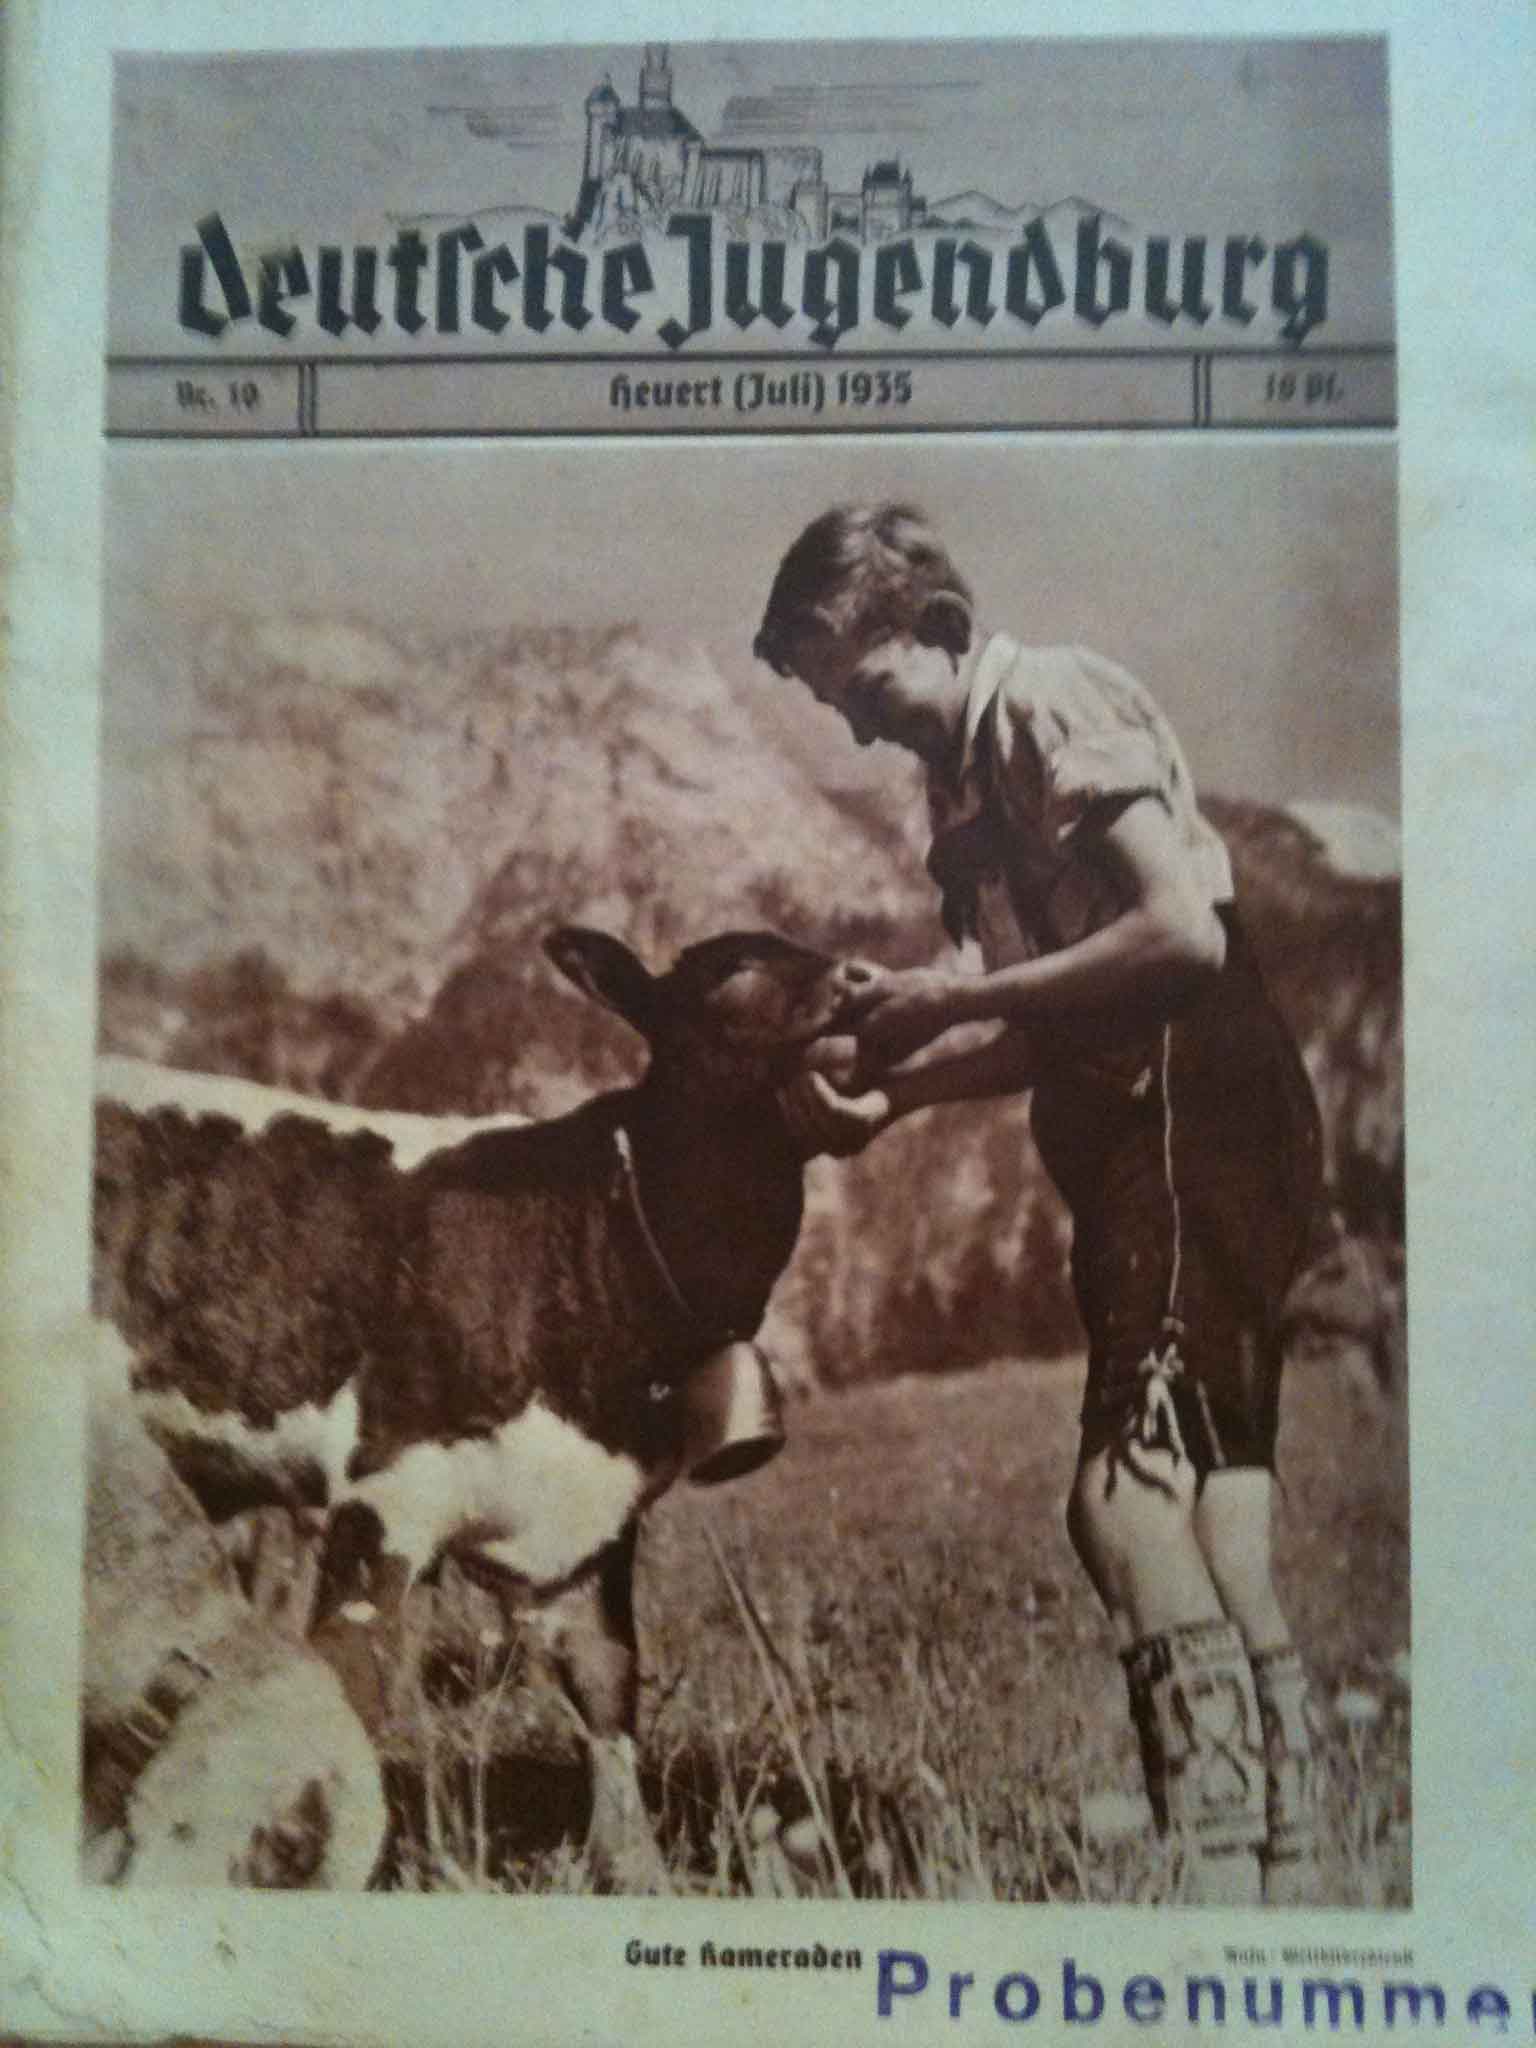 Nr. 10 von 1935, Deutsche Jugendburg